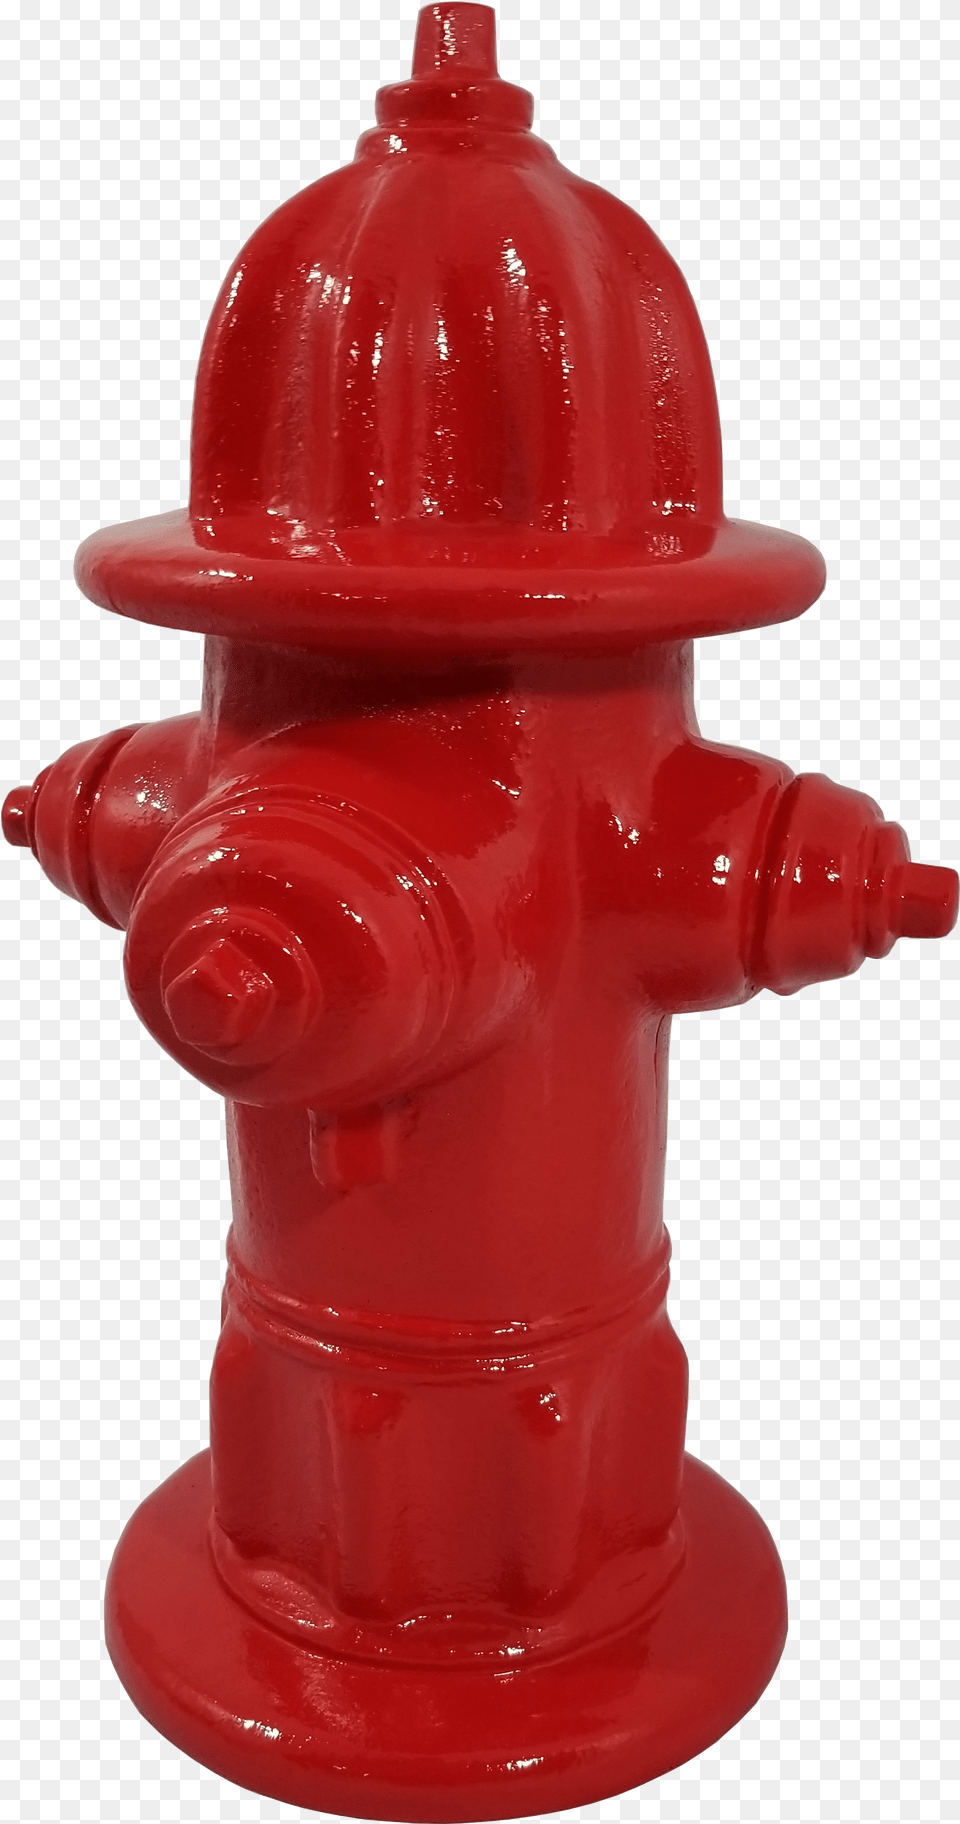 Fire Hydrant Fire Hydrant, Fire Hydrant Png Image